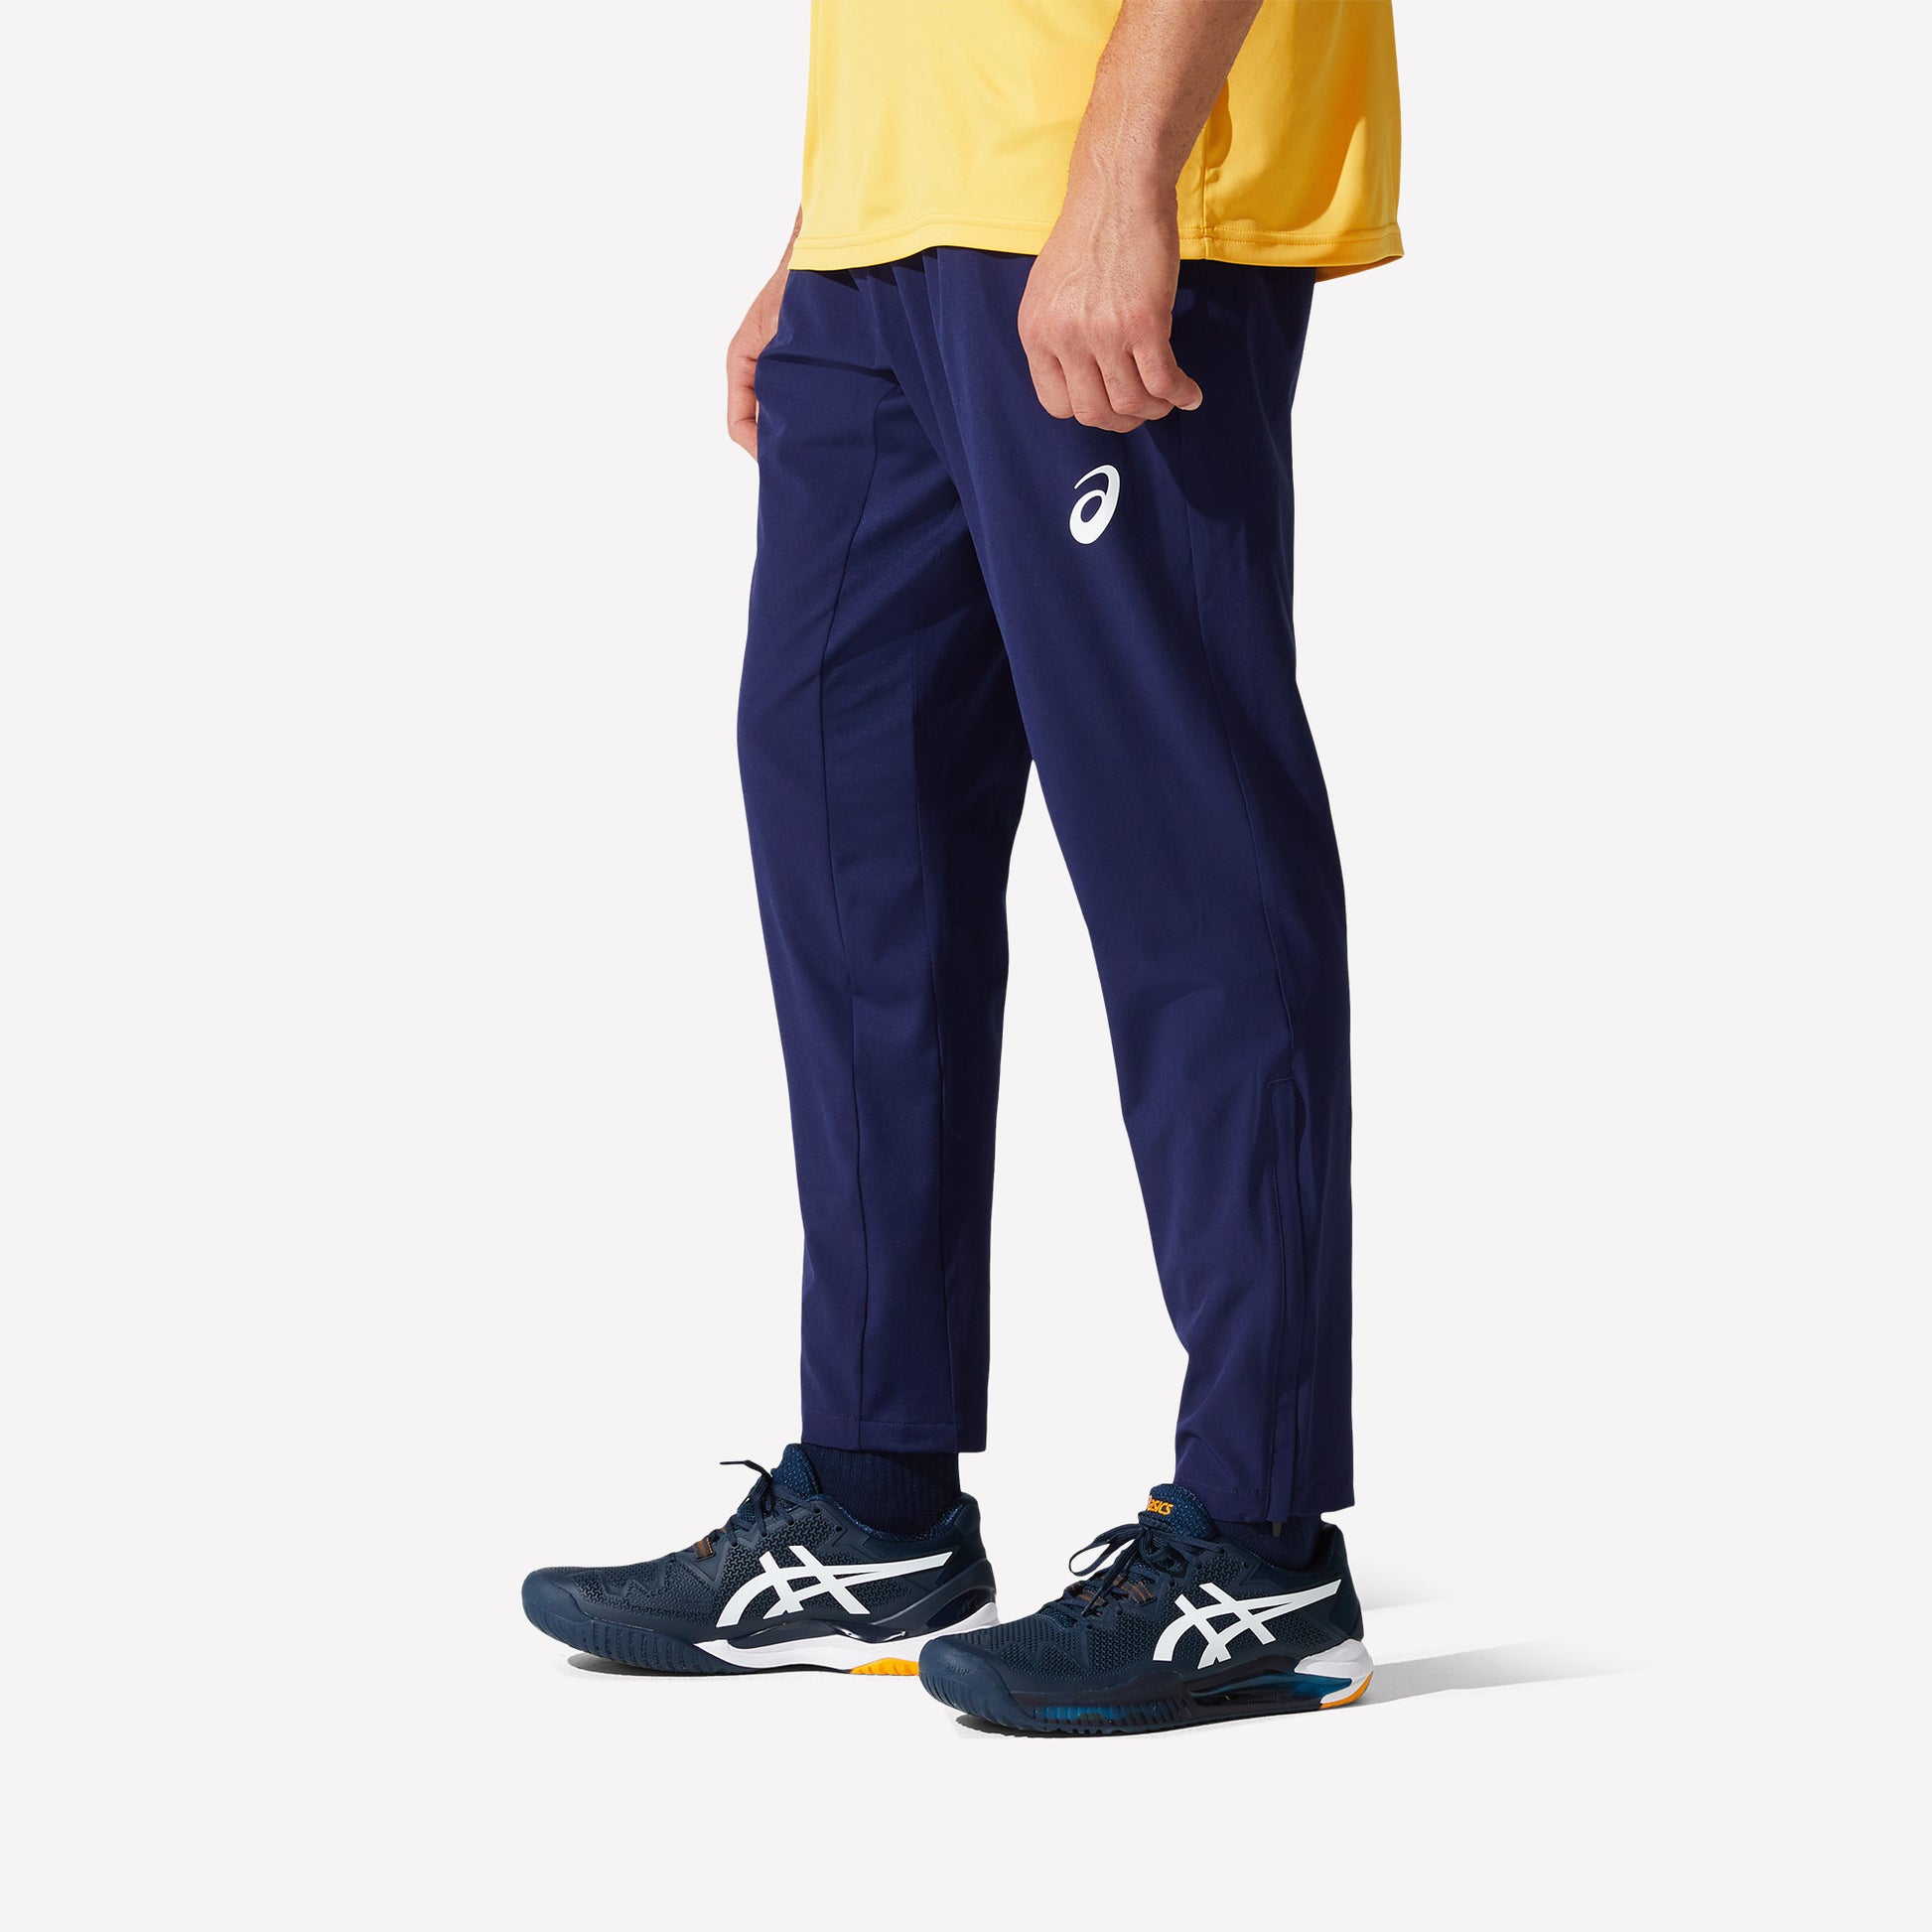 ASICS Match Men's Woven Tennis Pants Blue (4)